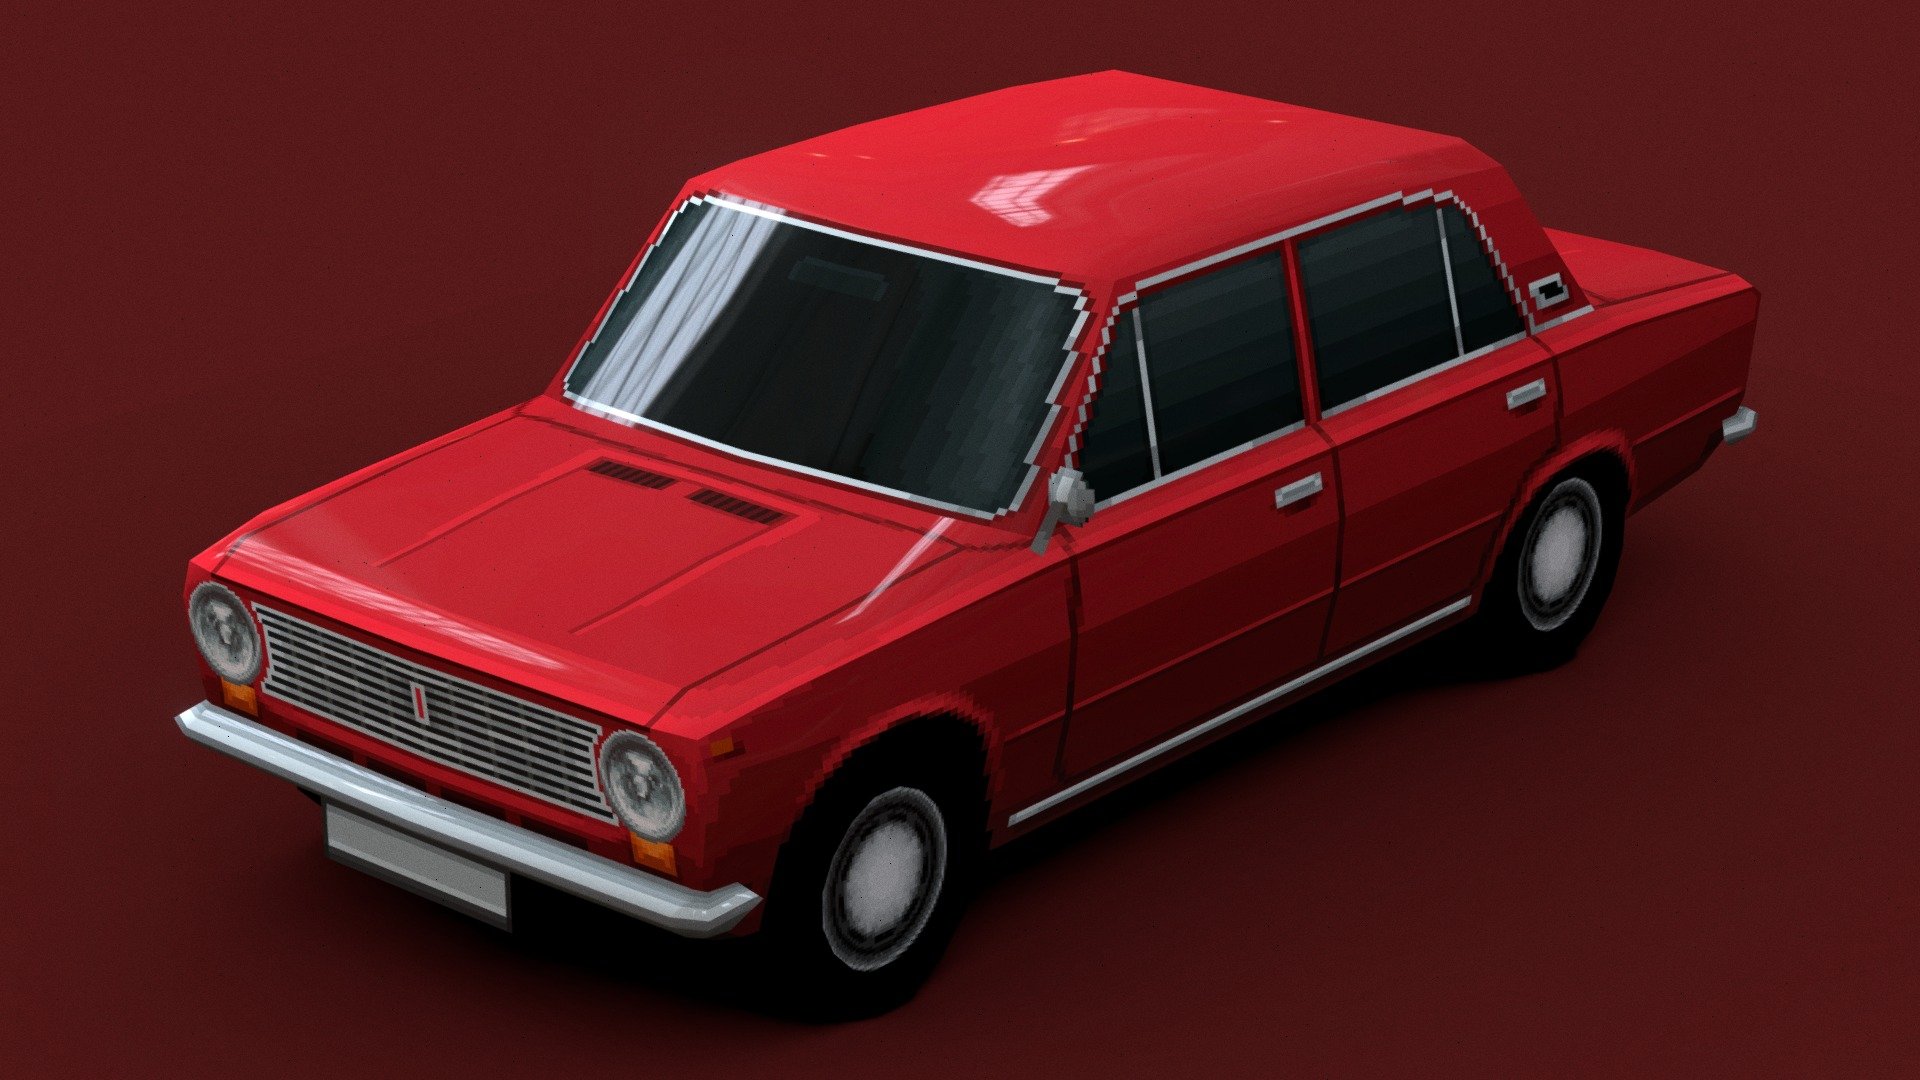 VAZ-2101 Zhiguli («Kopeyka» в простонародье) в PS1 стиле - советский заднеприводный легковой автомобиль малого класса с кузовом типа седан

сделано в #blockbench - VAZ-2101 Zhiguli «Kopeyka» (PS1 Low-poly) - 3D model by evgeniyy 3d model